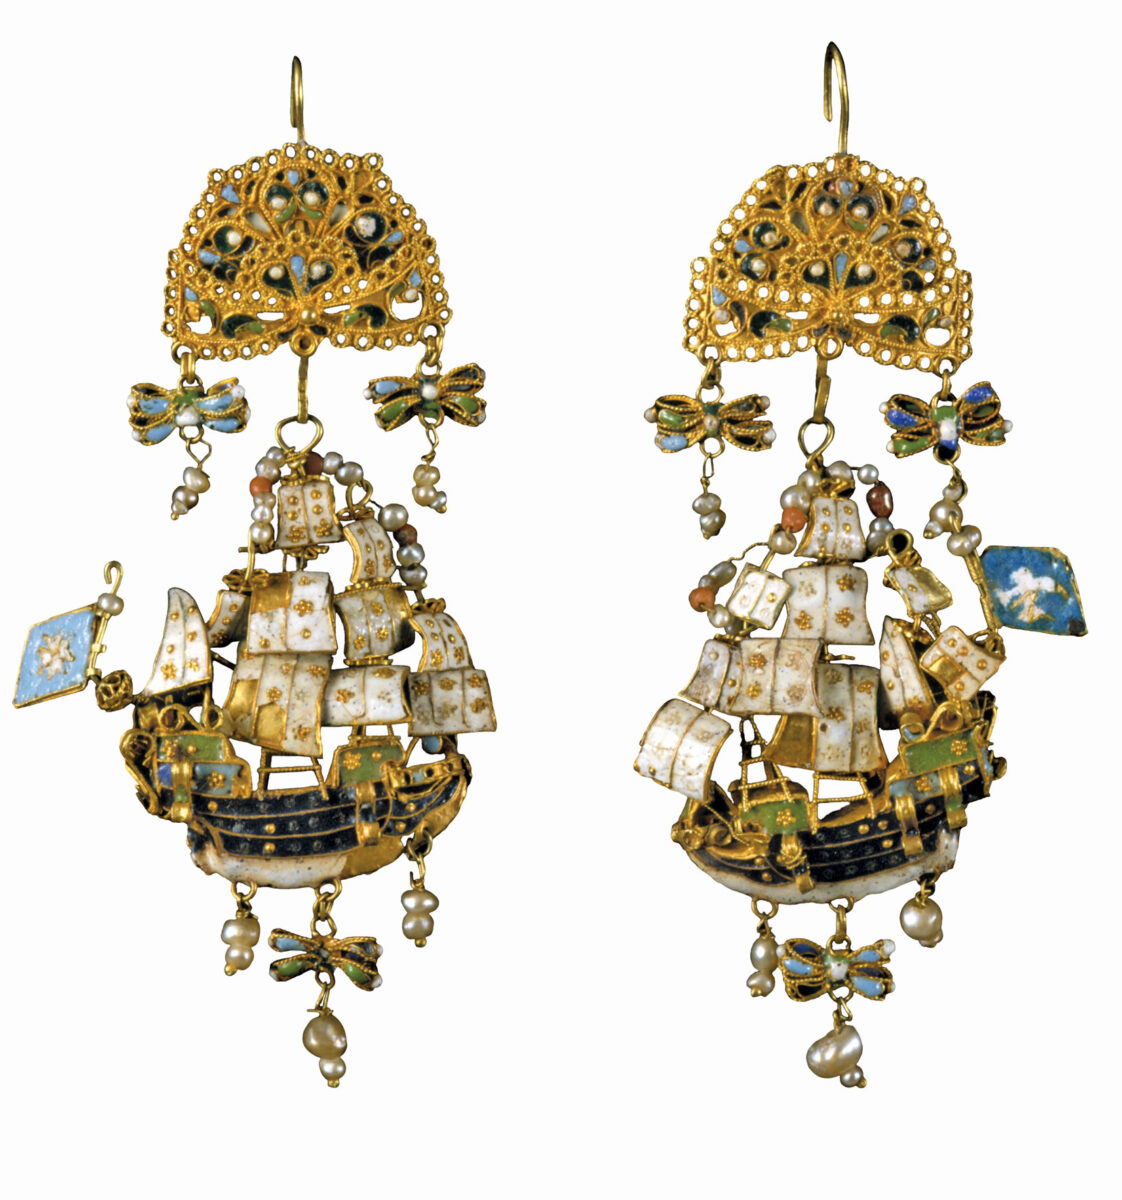 Ζευγάρι χρυσά σκουλαρίκια σε σχήμα καραβέλας, διακοσμημένα με σμάλτο και μαργαριτάρια. Πάτμος, 18ος αι. Πηγή εικόνας: Μουσείο Μπενάκη.